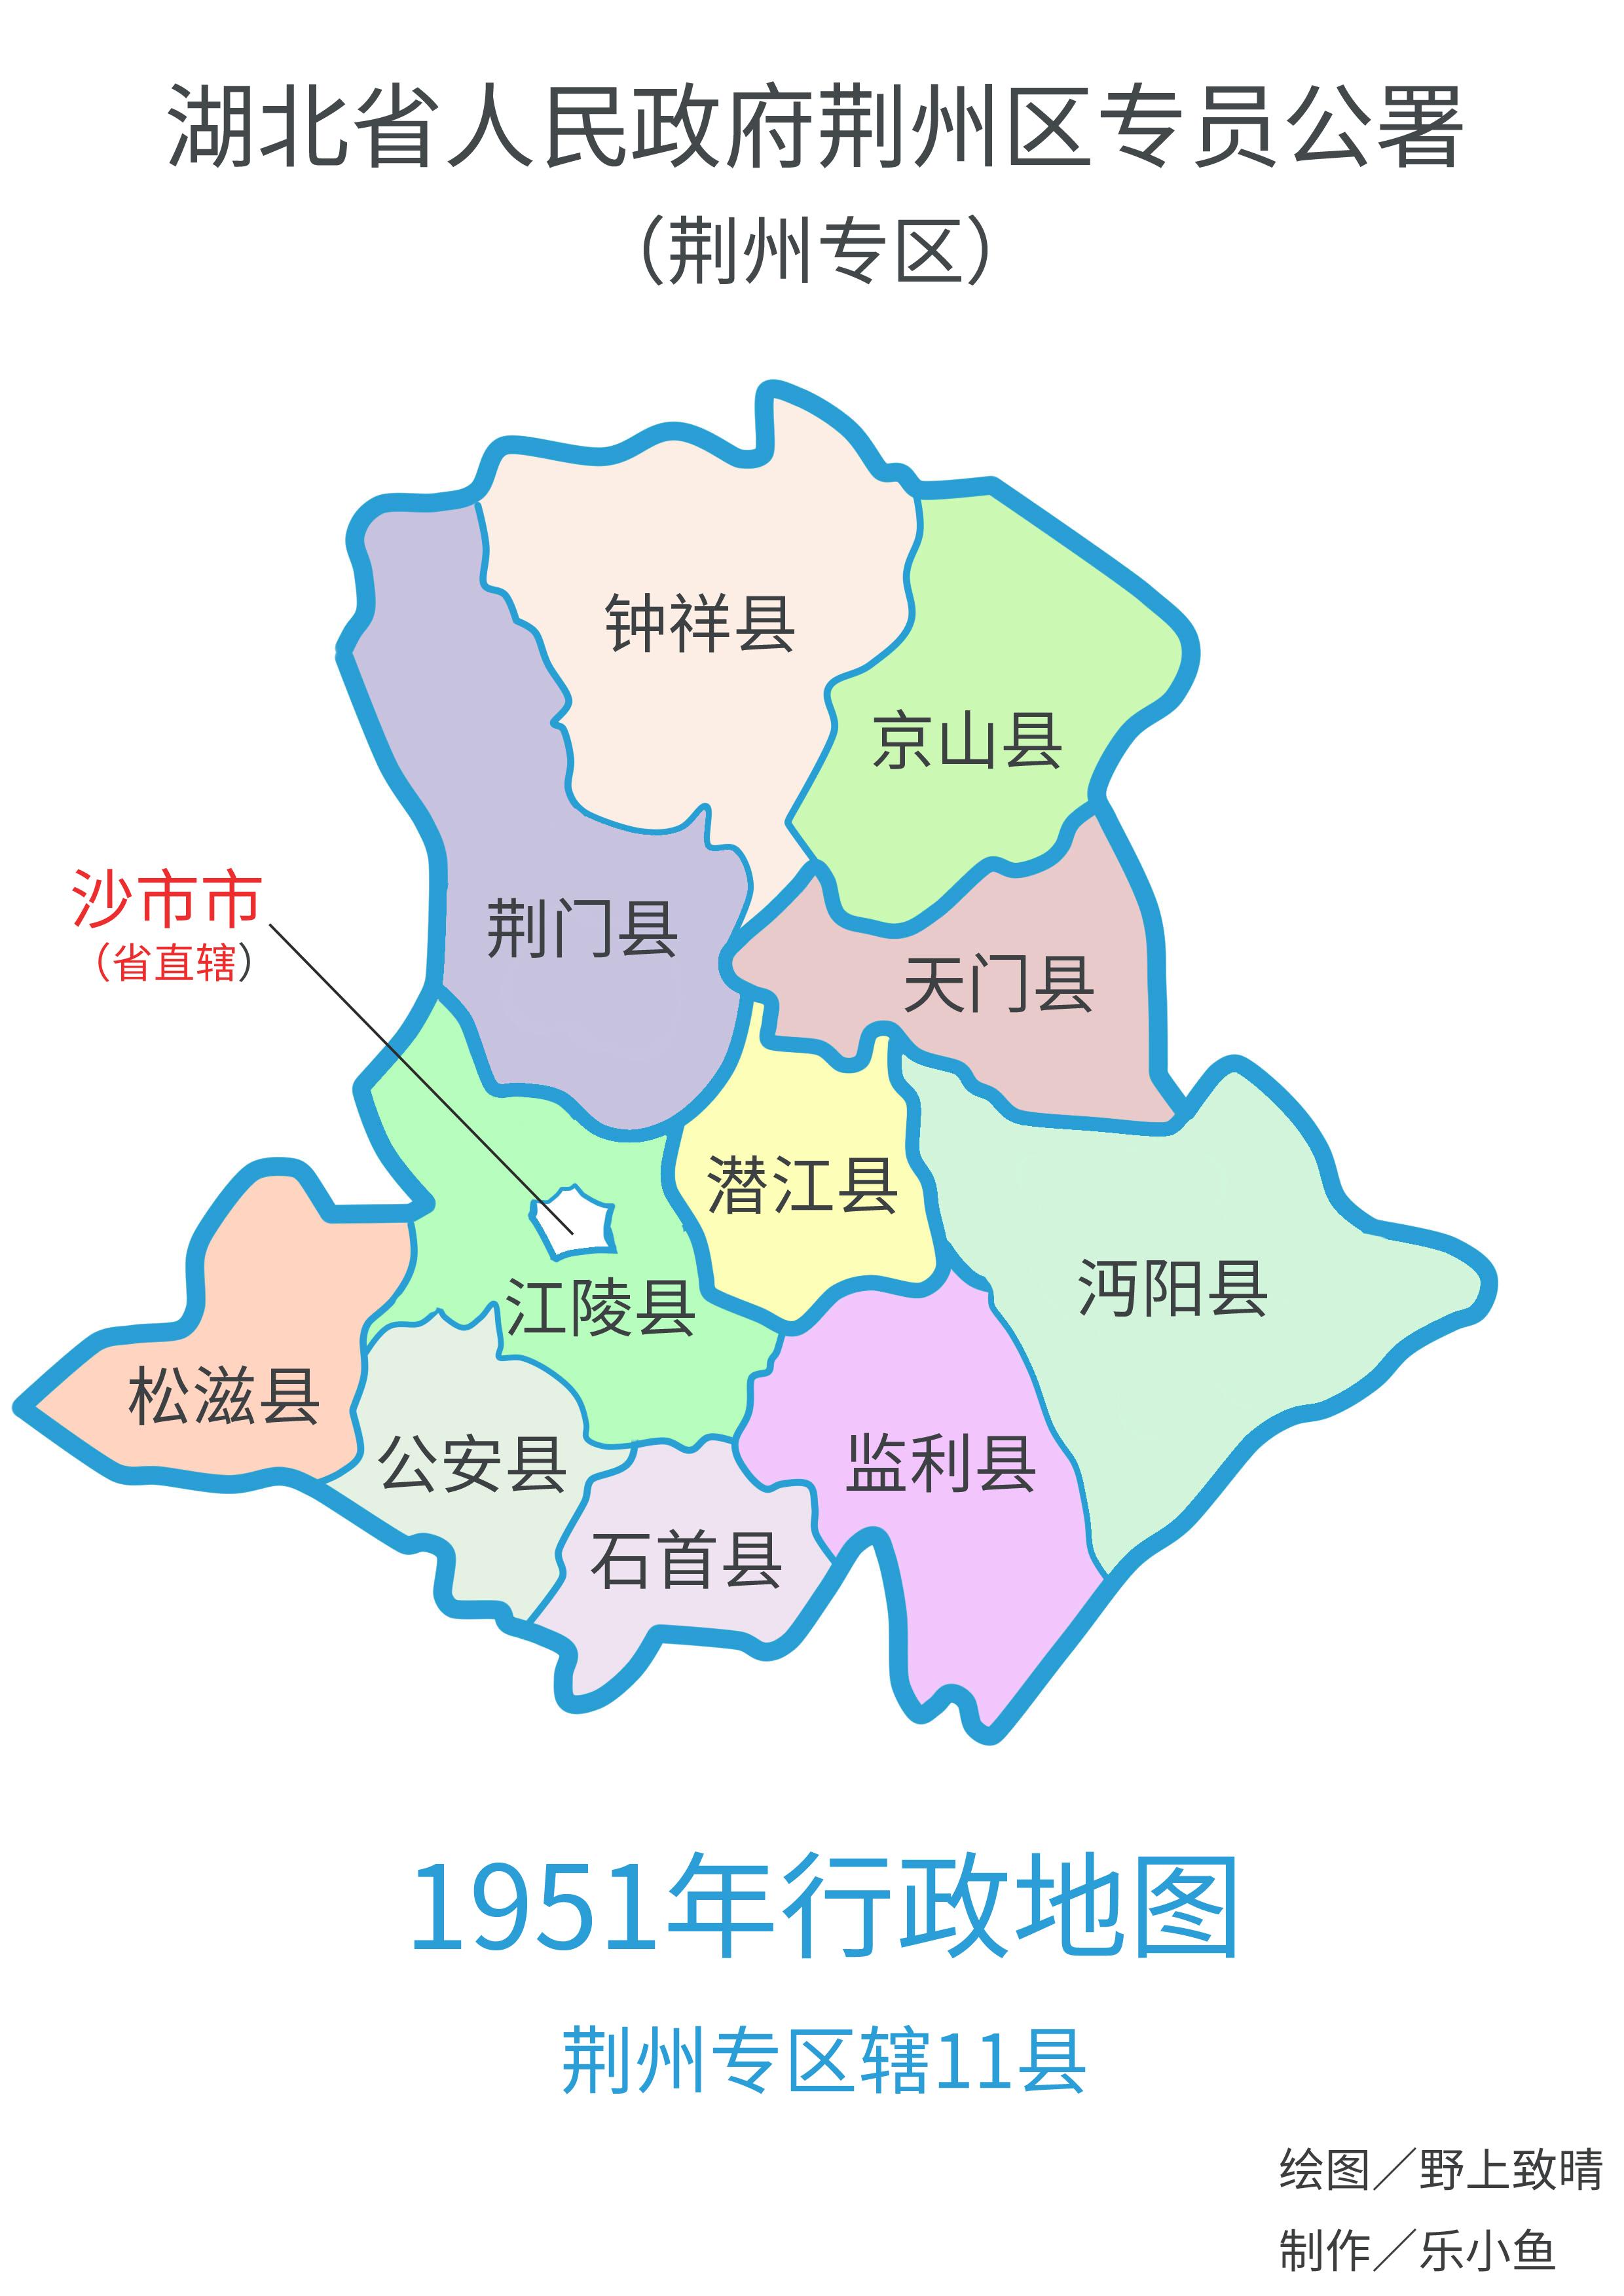 图解建国后湖北荆州行政区划变更史 